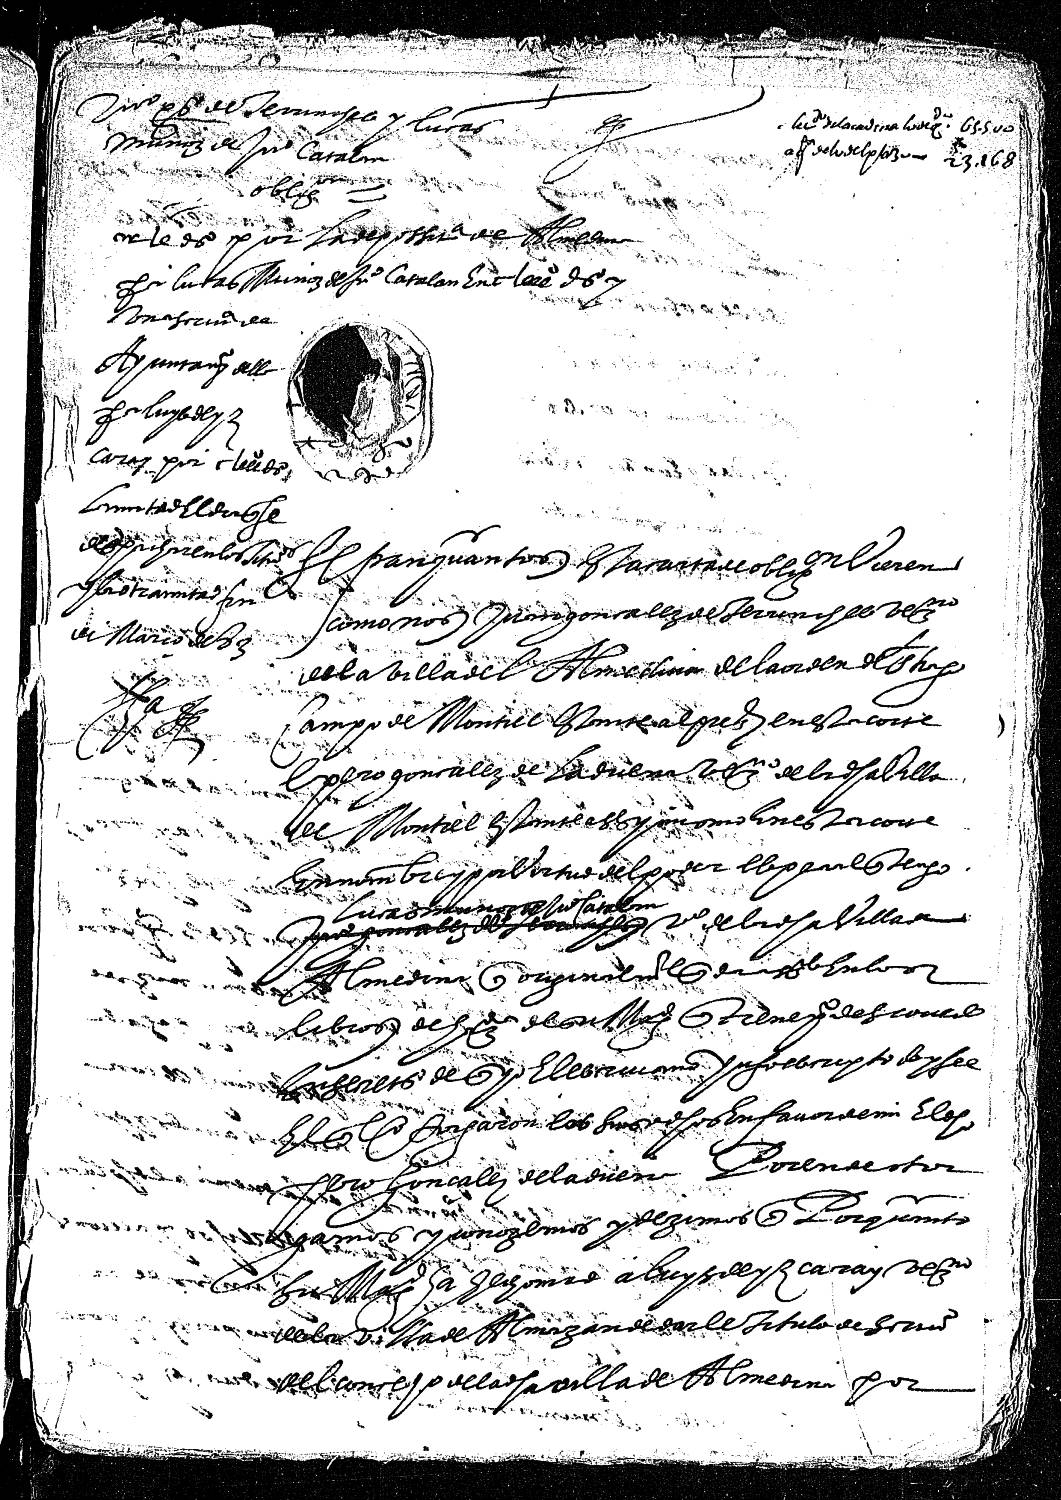 Carta de obligación de Juan González de Terrinchez y Lucas Muñoz, vecinos de Almedina, para pagar 180 ducados por el título de escribano de Almedina dado a Luis de Izcaray, vecino de Almazán, y otros 180 ducados por el de depositario general concedido a Lucas Muñoz.